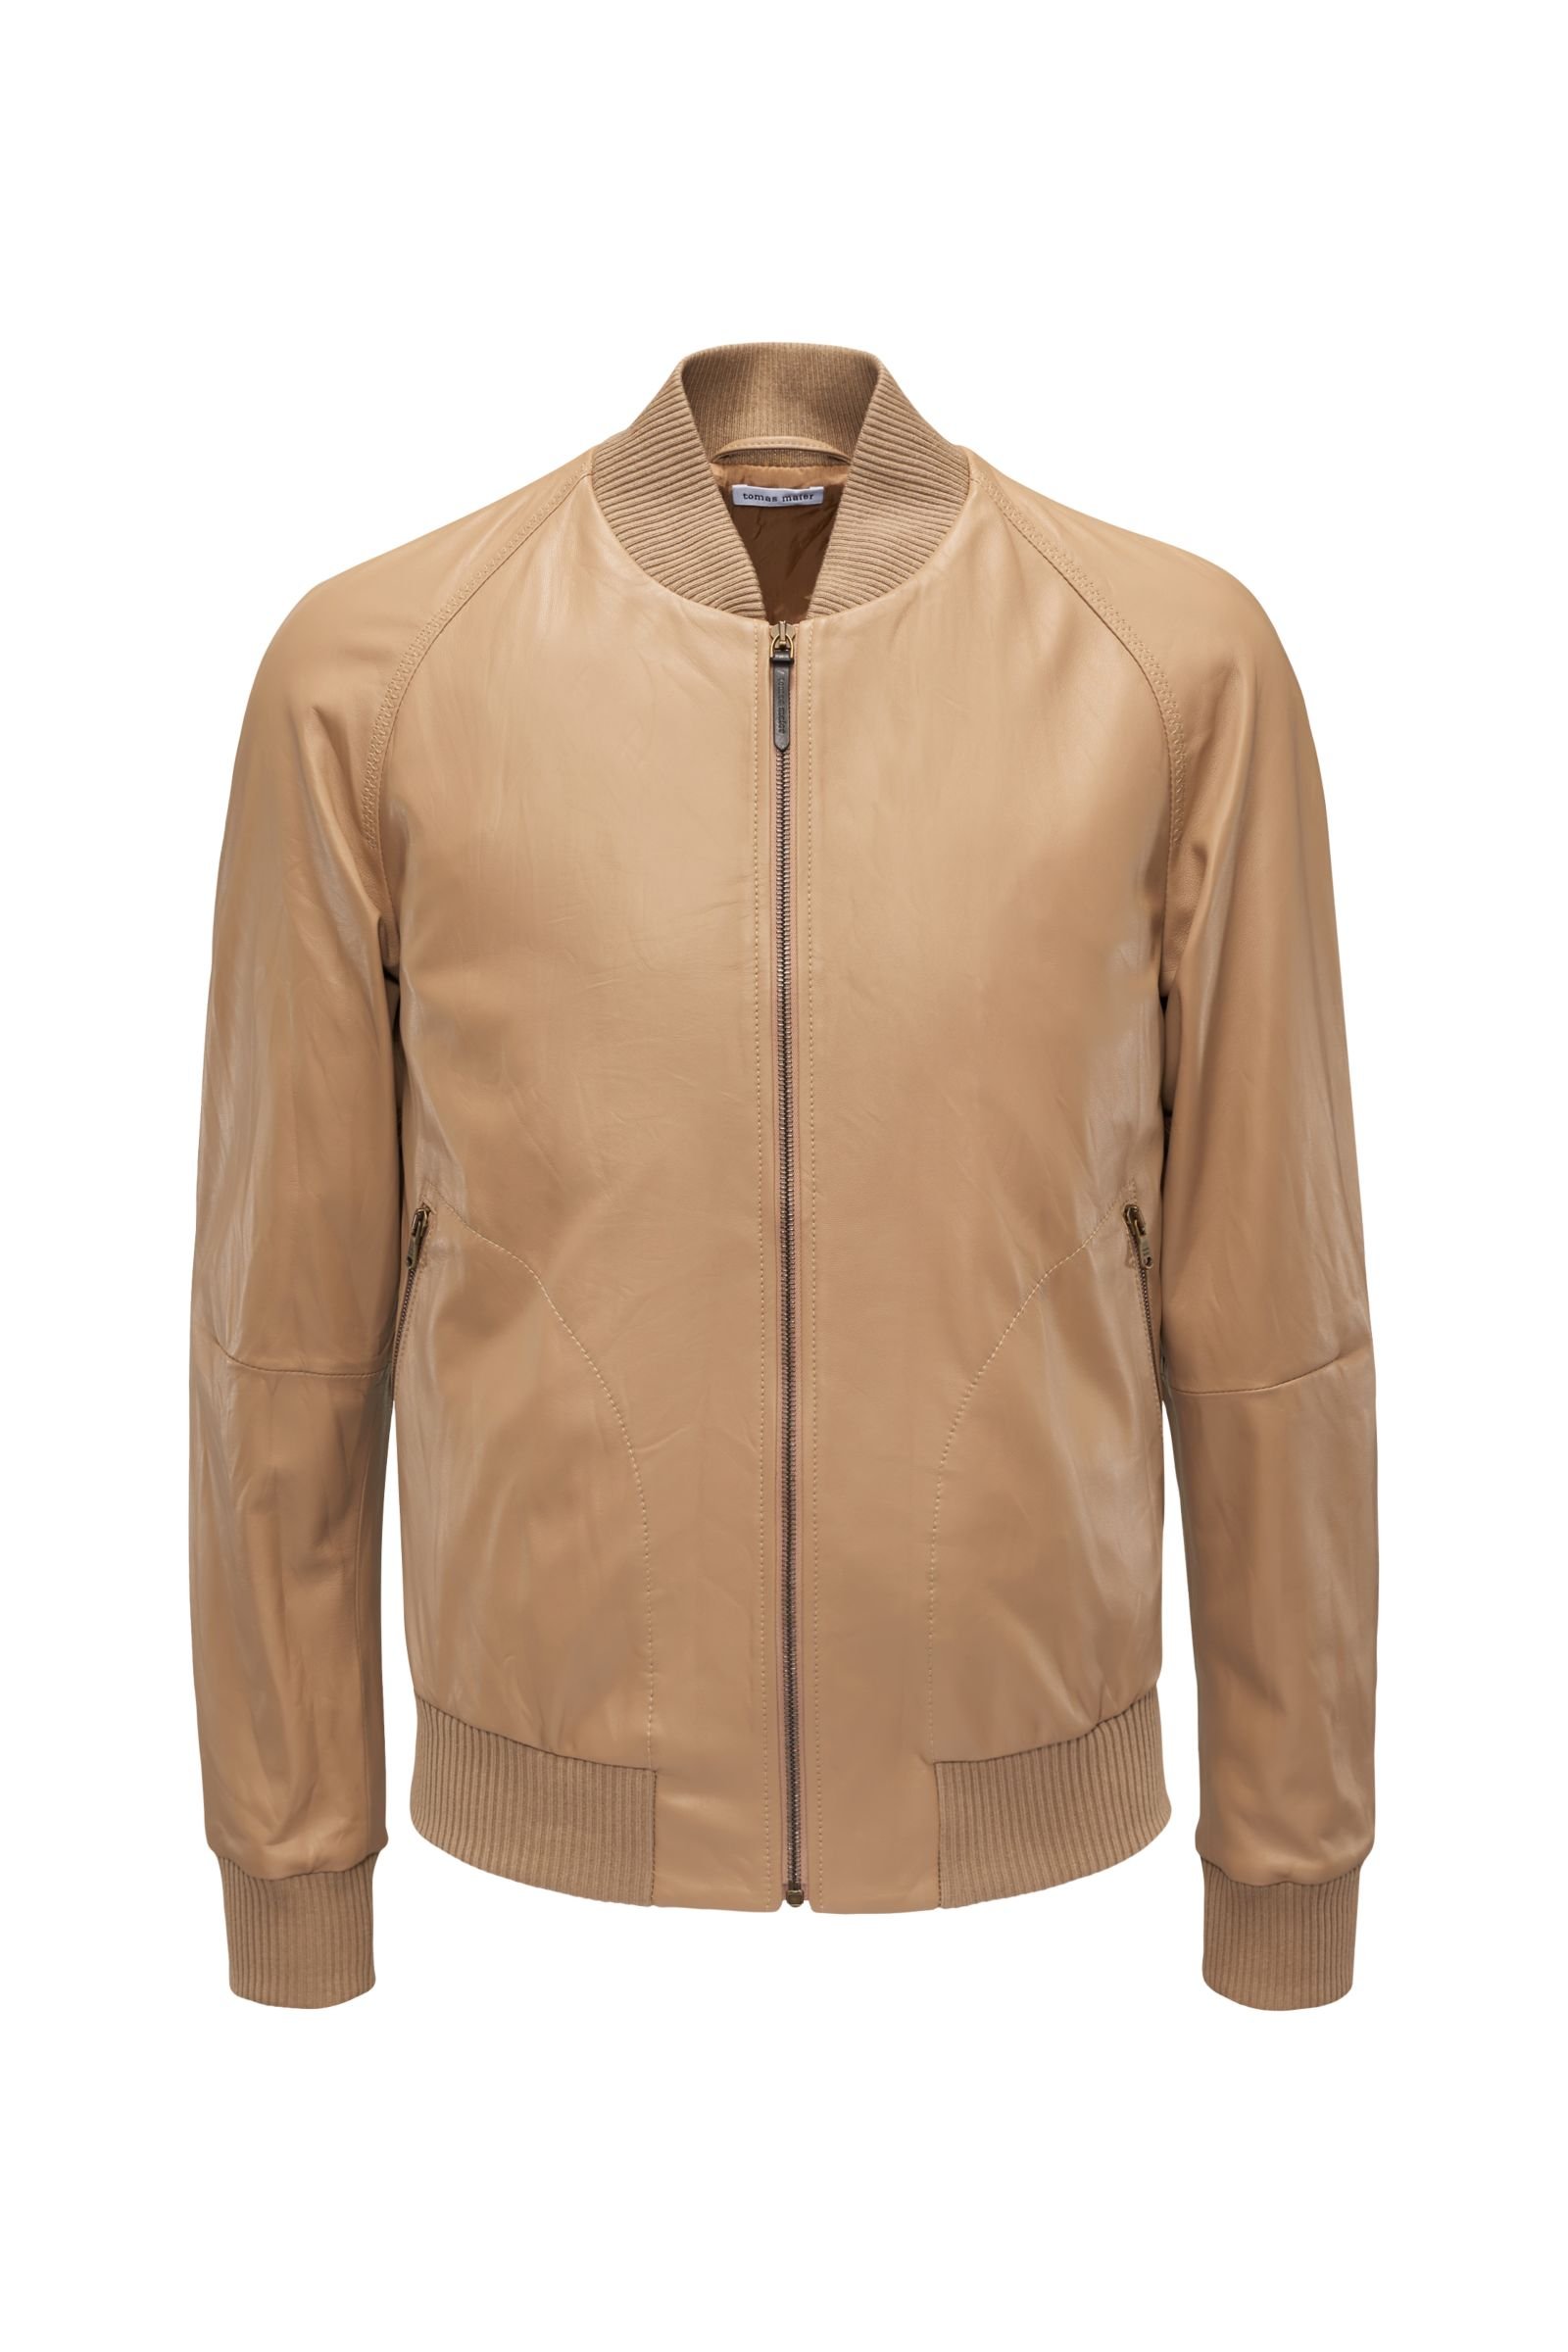 Leather bomber jacket beige